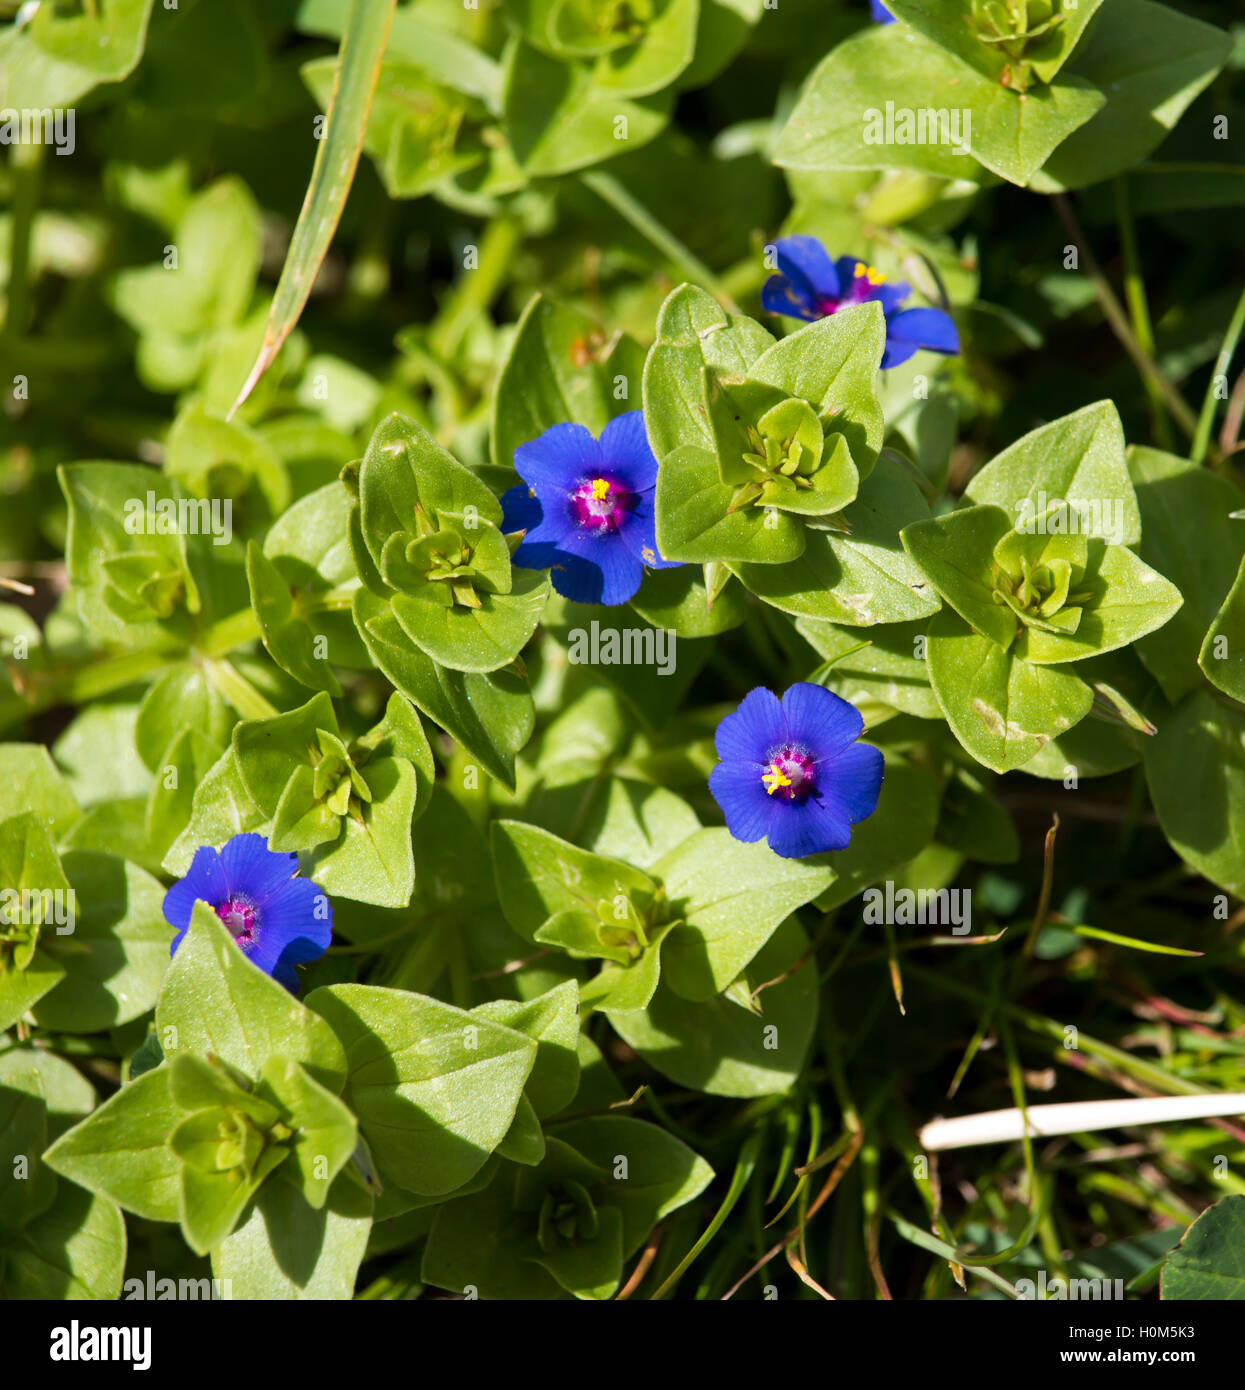 Mauvaise herbe commune Anagallis arvensis Mouron bleu une plante insecticide est toxique pour les cultures et de stock dans les pâturages et les verges. Banque D'Images